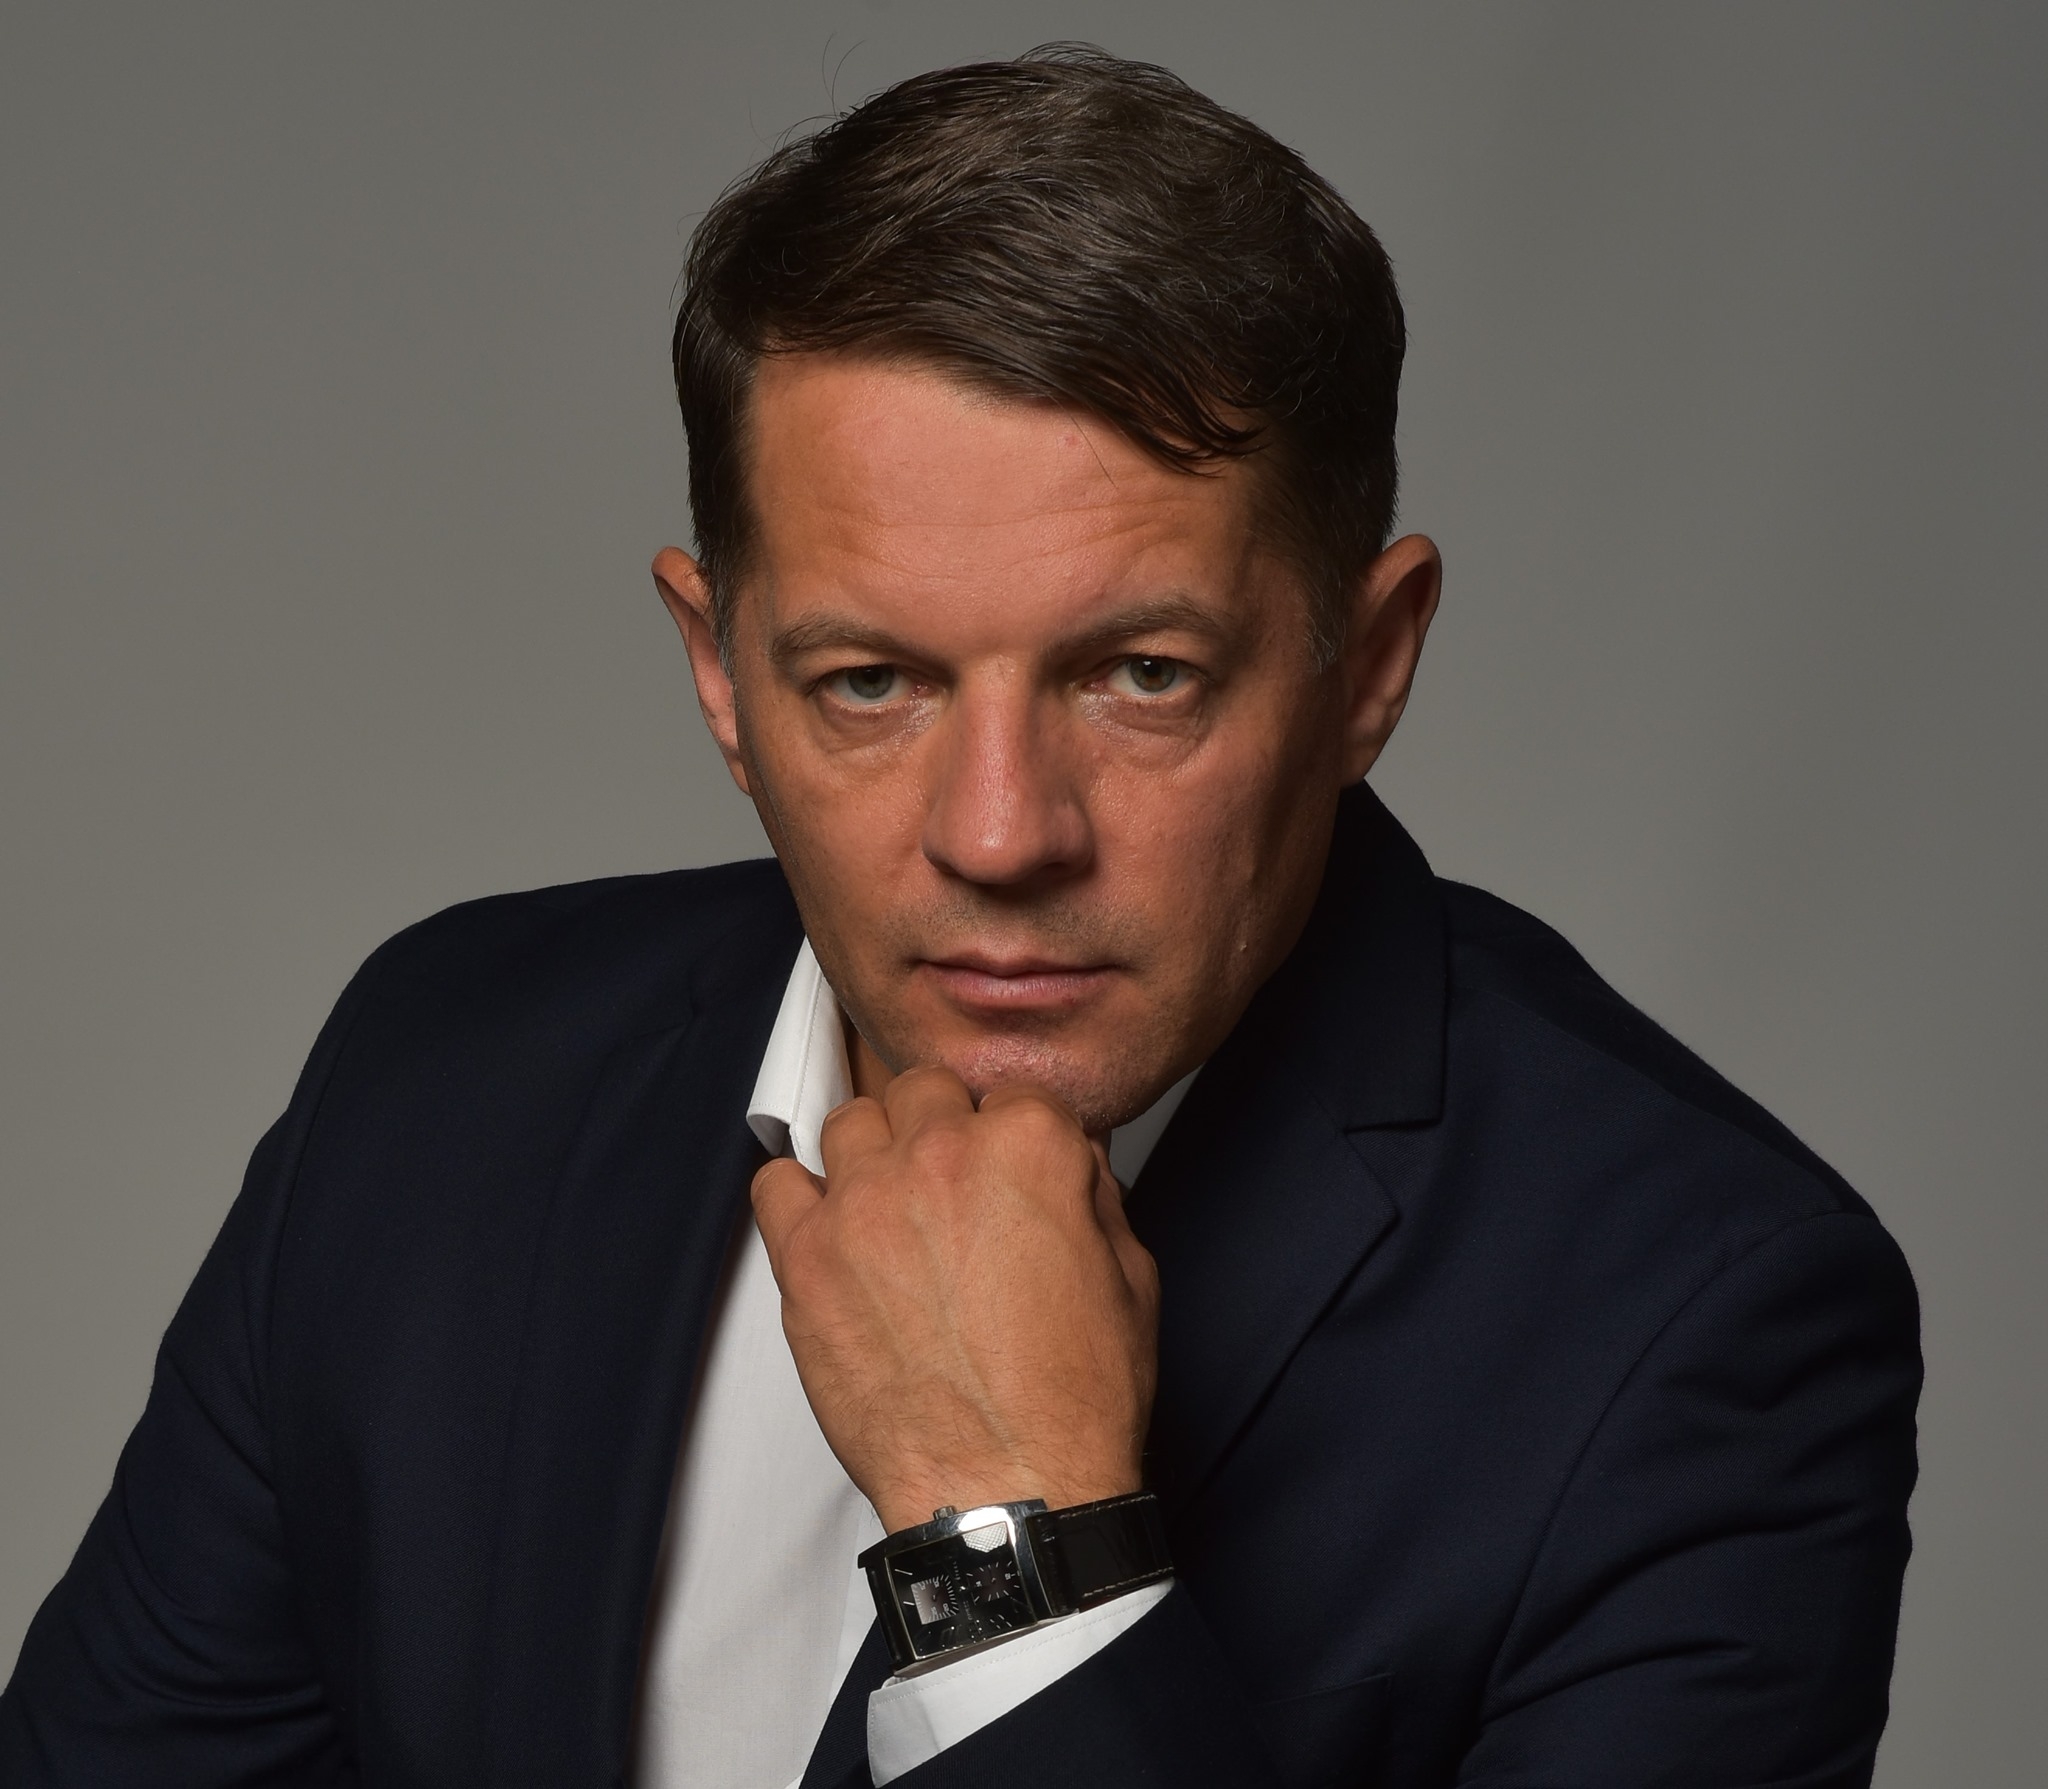 Брудна кампанія за чесні вибори: Сущенко закликав Голуба достойно вести виборчу кампанію